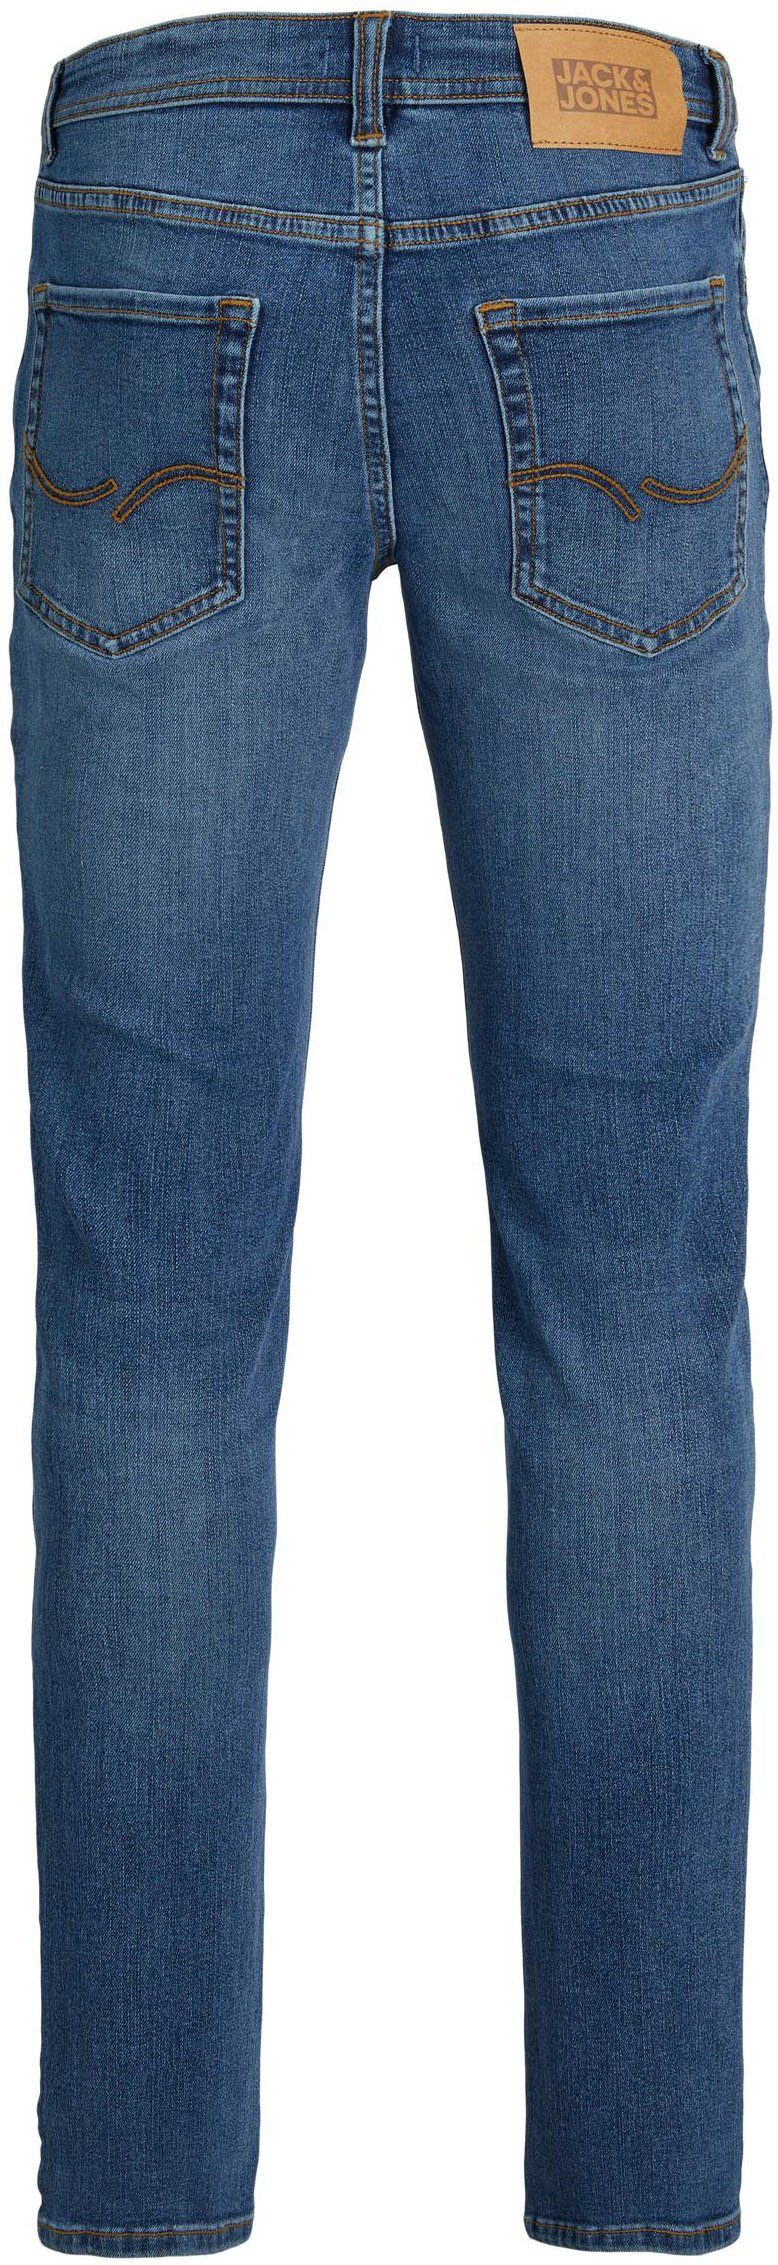 JJIORIGINAL JNR JJIGLENN Slim-fit-Jeans denim & Junior SQ blue 270 Jones Jack